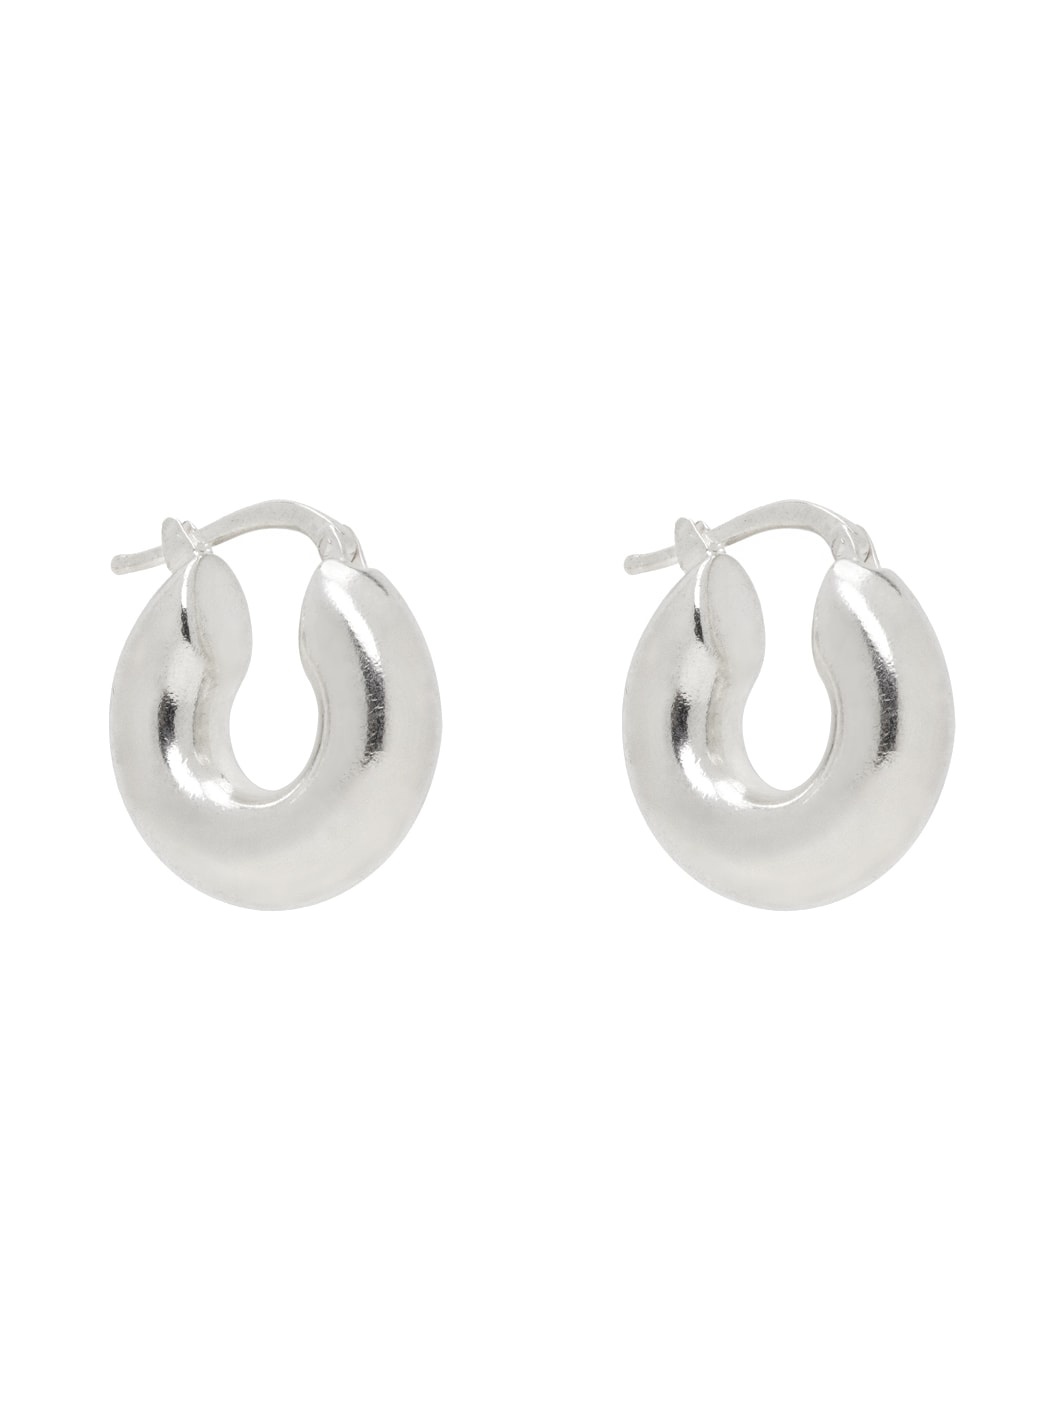 Silver Chunky Hoop Earrings - 2